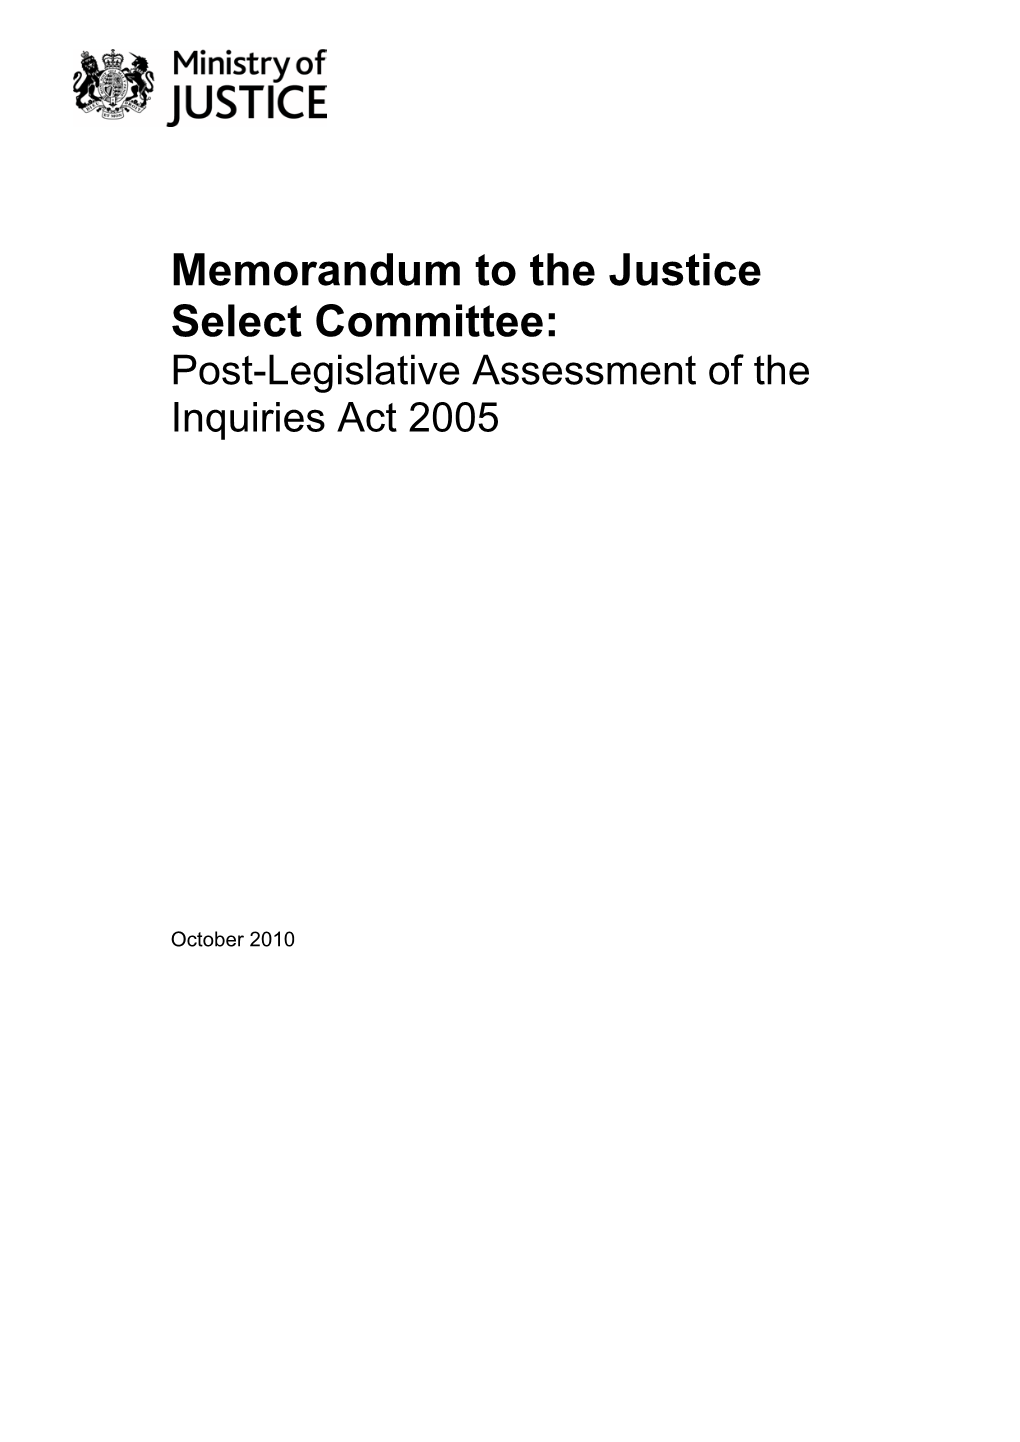 Post-Legislative Assessment of the Inquiries Act 2005